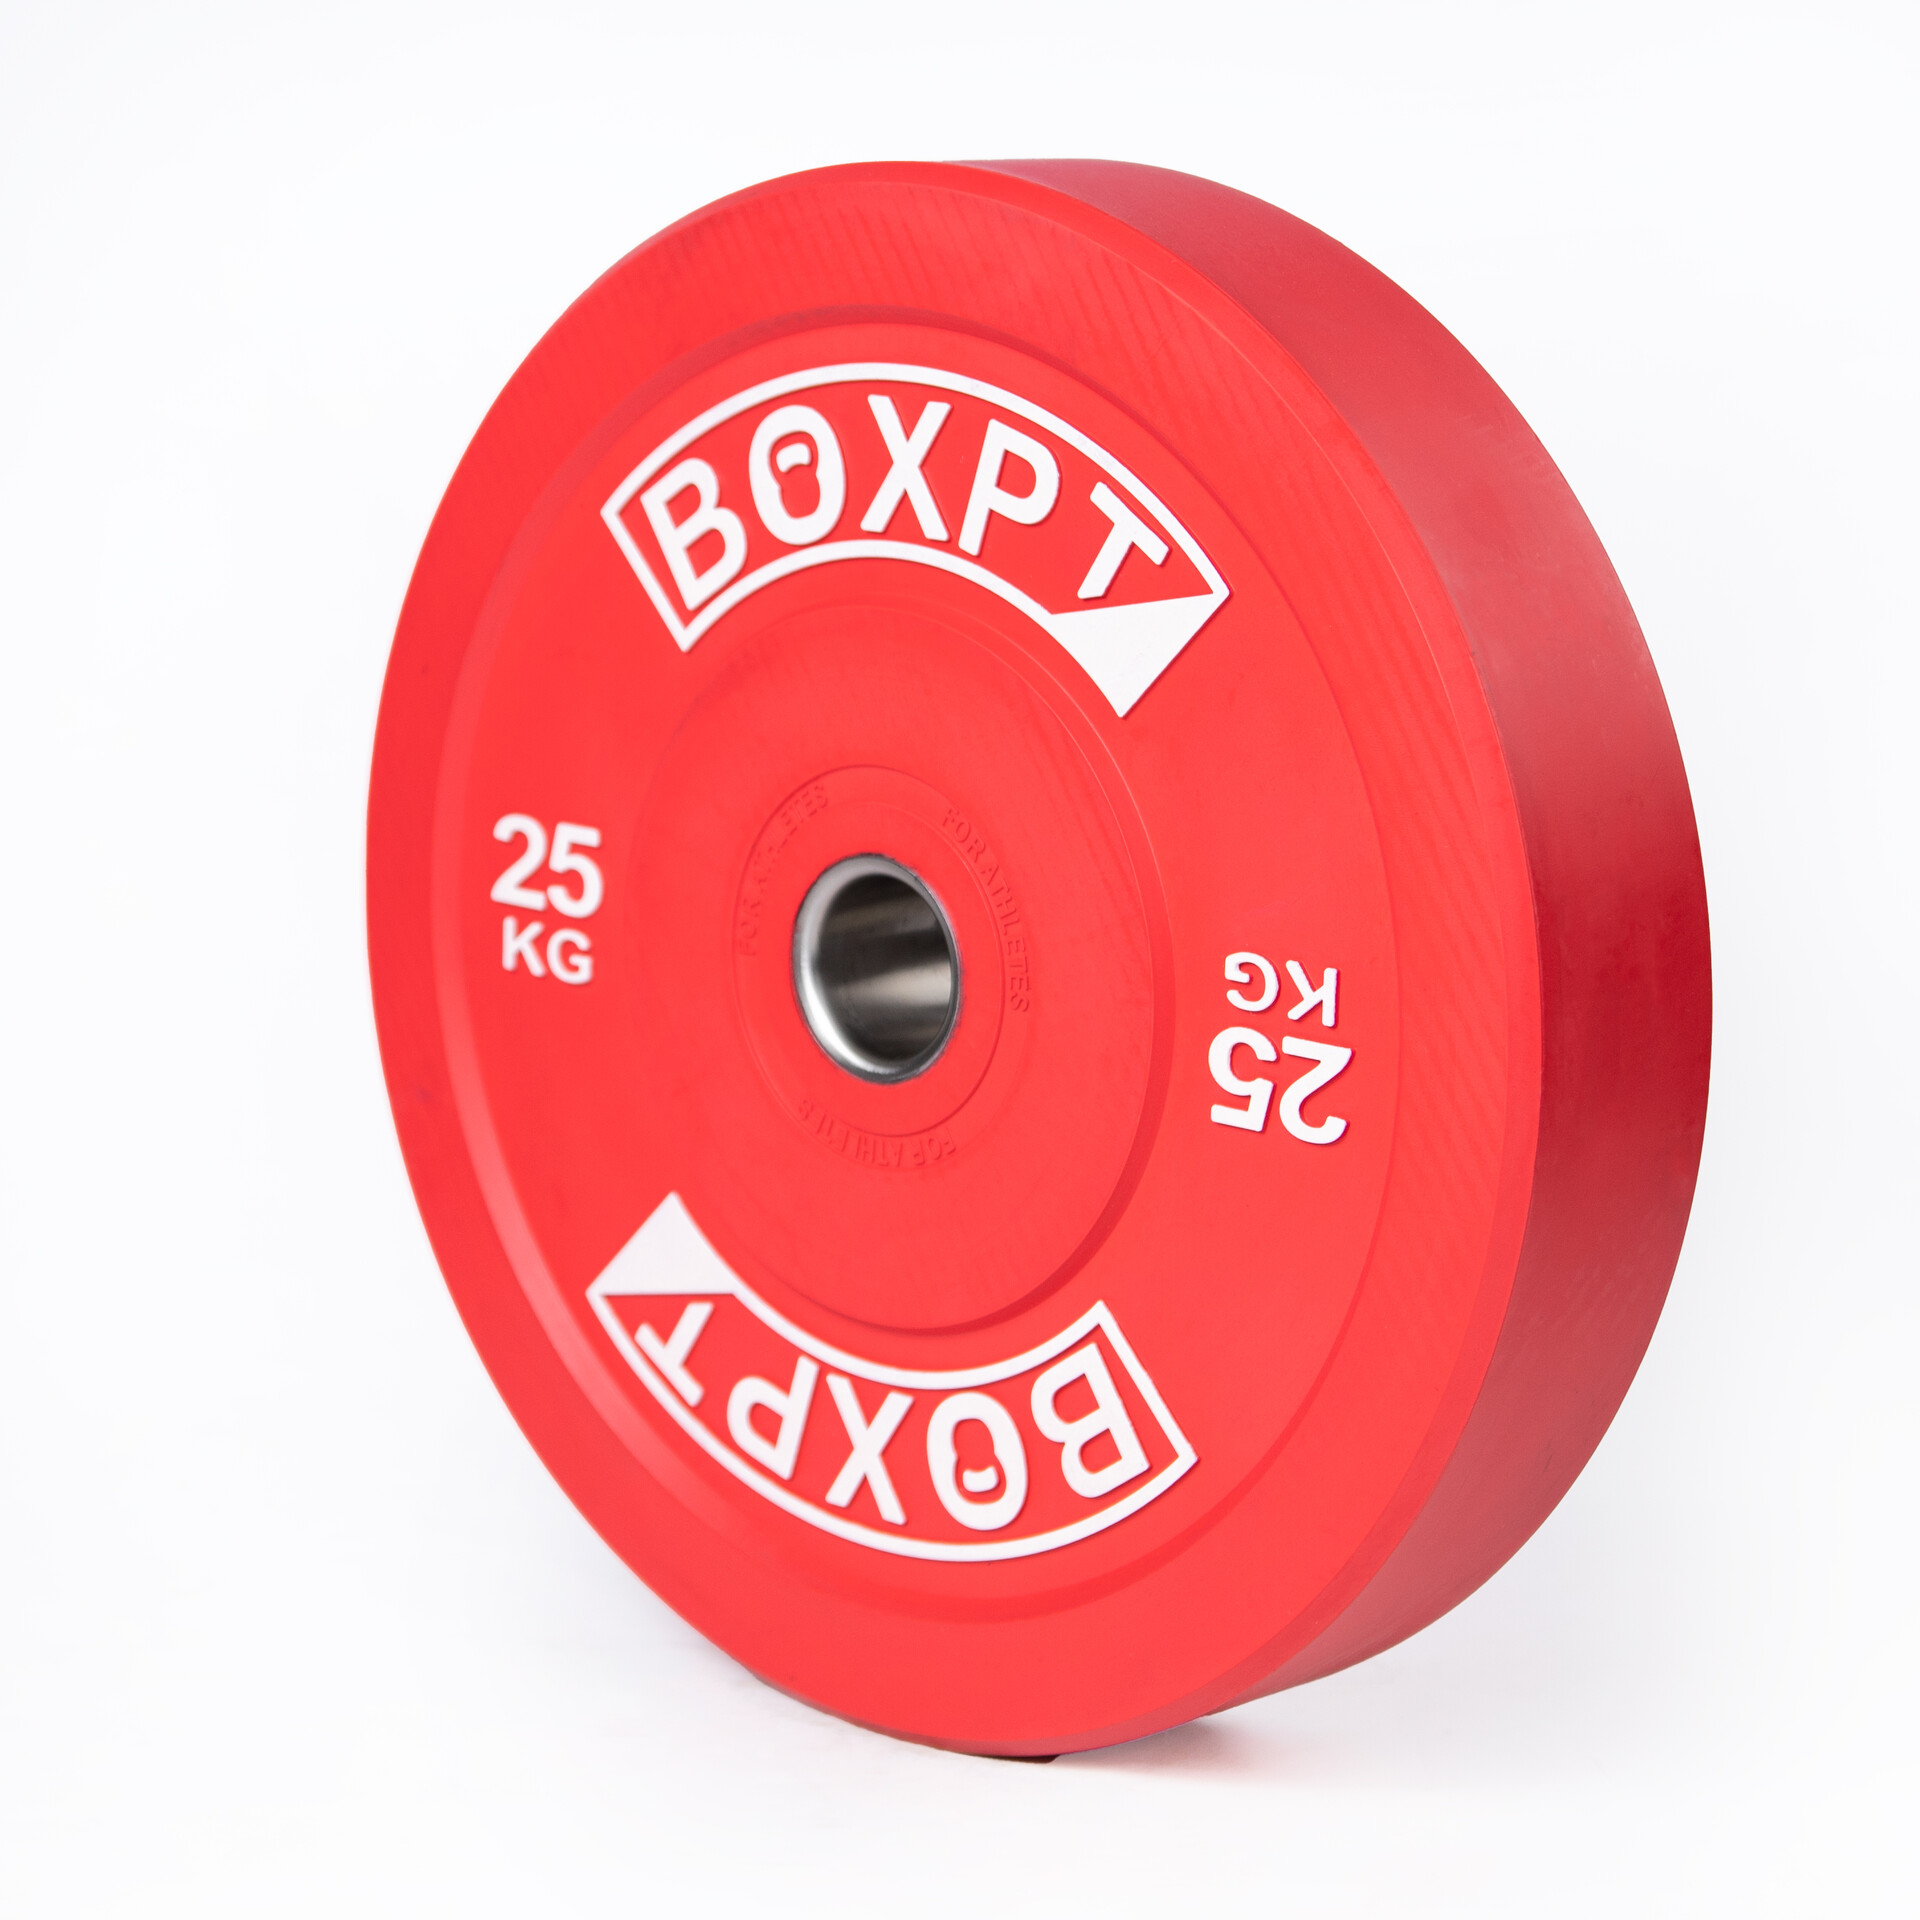 Disco Bumper Colorido Boxpt 25kg - rojo - 